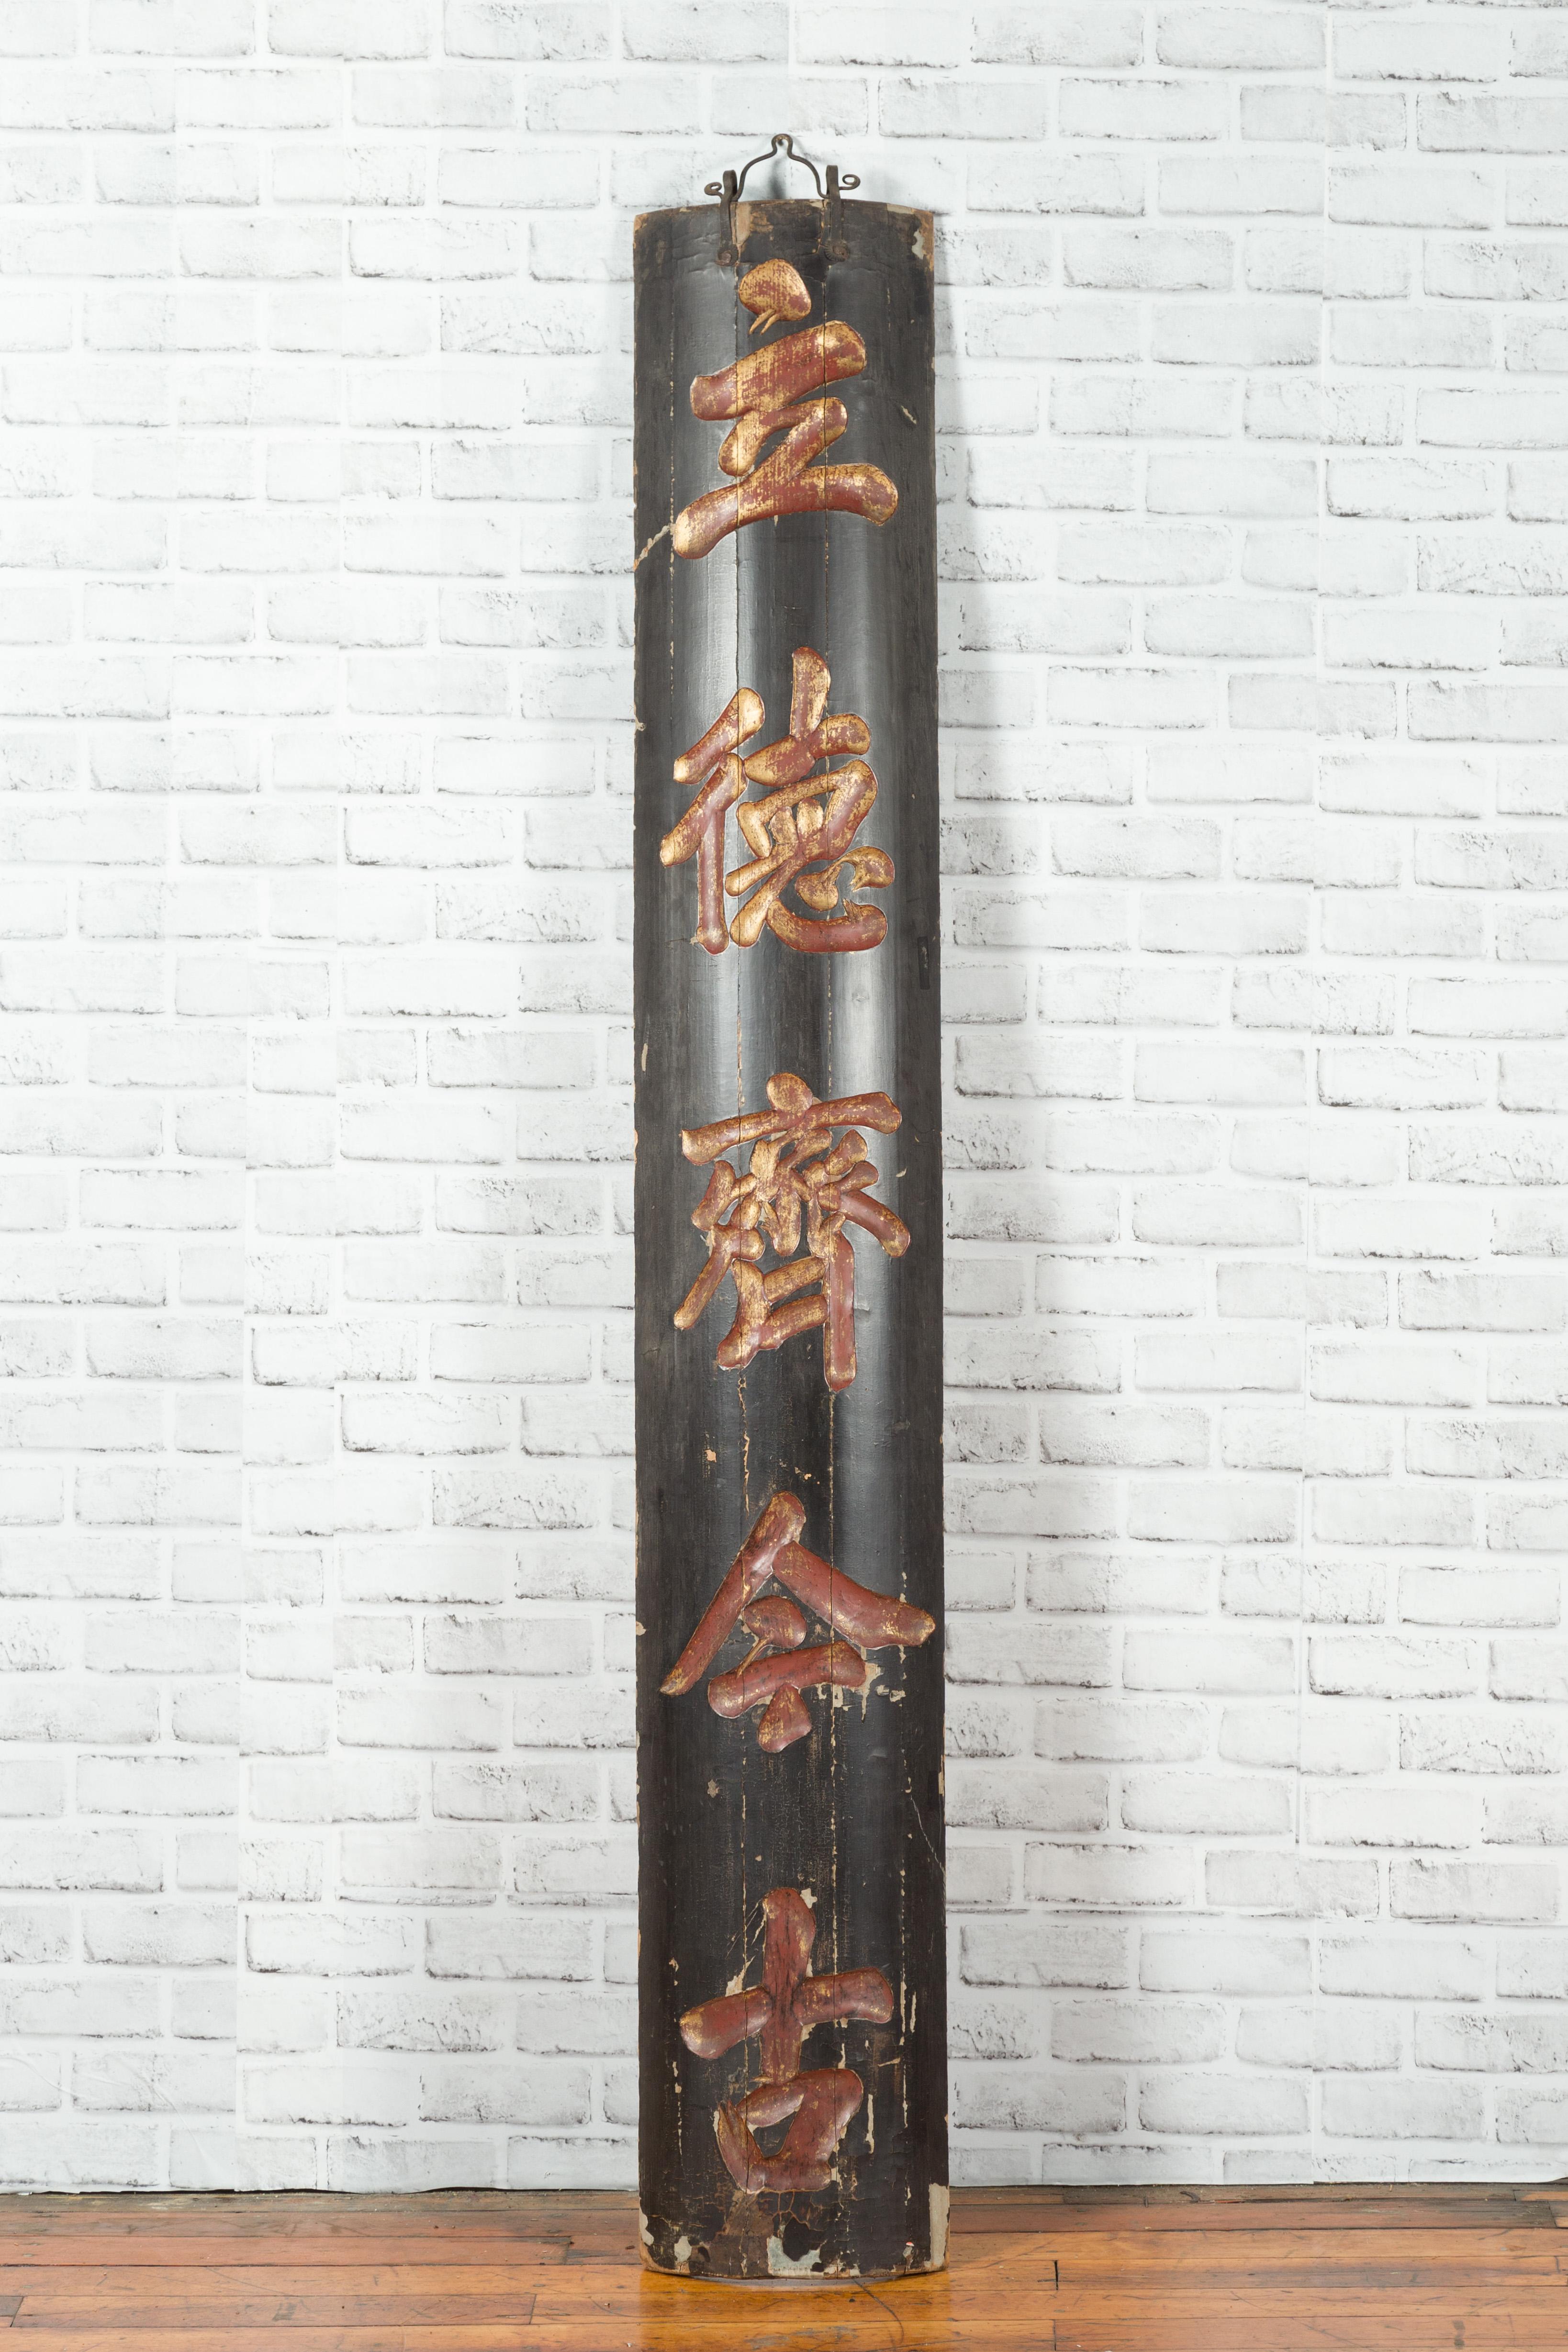 Ein chinesisches antikes schwarzes vertikales Schild aus dem 19. Jahrhundert mit goldener Kalligrafie. Dieses hohe und schmale Holzschild wurde im 19. Jahrhundert in China hergestellt und hat einen schwarzen Grund, der die goldene Kalligrafie mit